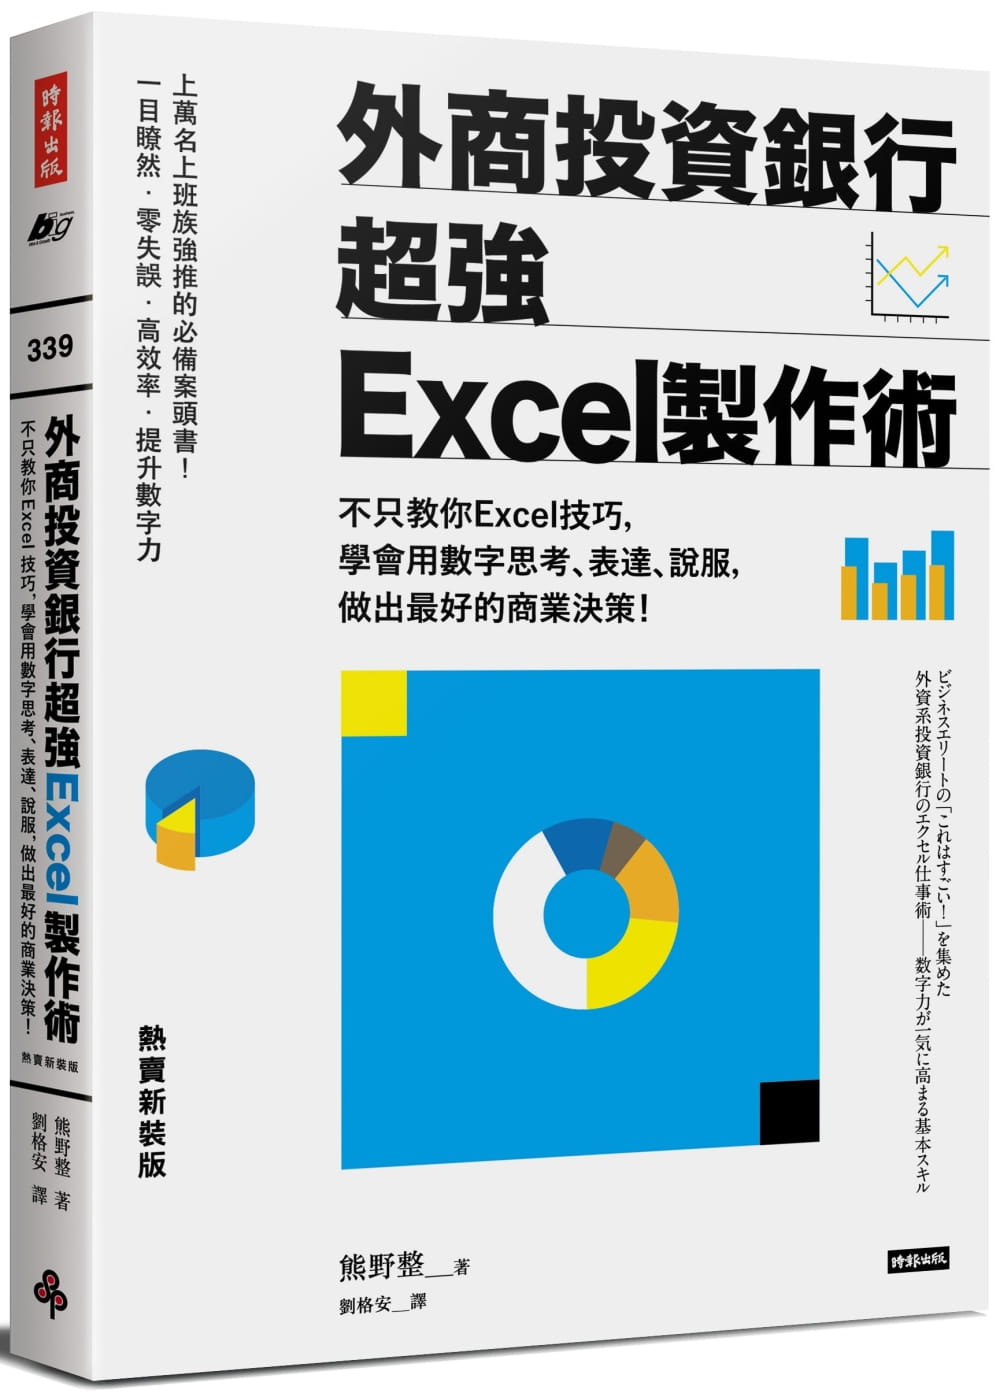 外商投資銀行超強Excel製作術（熱賣新裝版）：不只教你Excel技巧，學會用數字思考、表達、說服，做出最好的商業決策！